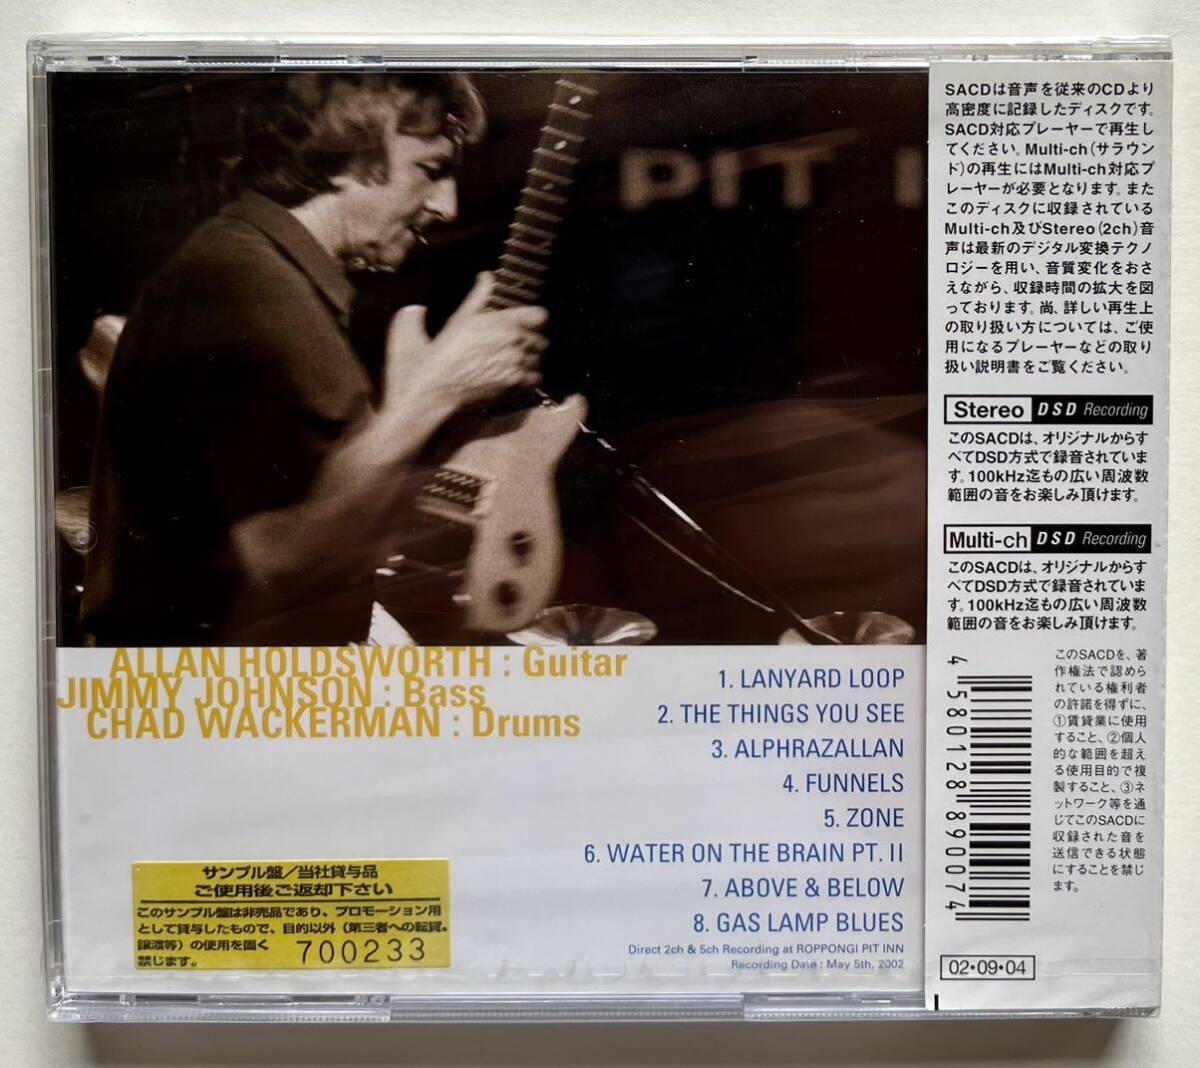 【未開封未使用】アラン・ホールズワース / All Night Wrong SACD サンプル盤Hybrid Multichannel & Stereo Allan Holdsworthの画像2